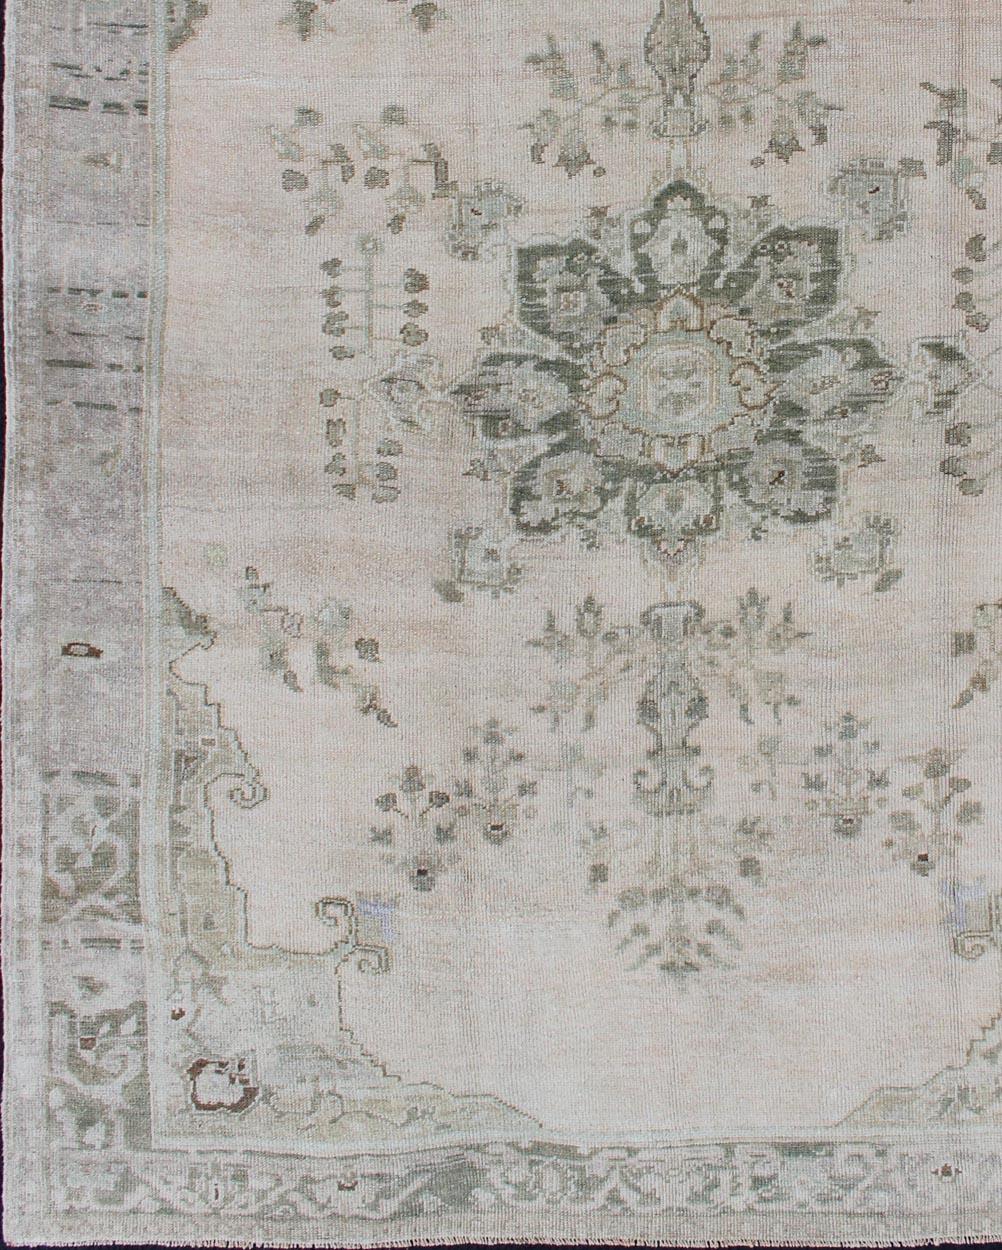 Oushak Vintage-Teppich mit Blumenmotiven in neutralen Farben, Teppich tu-alk-4894, Herkunftsland / Typ: Türkei / Oushak, um 1940.

Dieser schöne und vielseitige Oushak-Teppich ist in neutralen Tönen gehalten und zeichnet sich durch ein